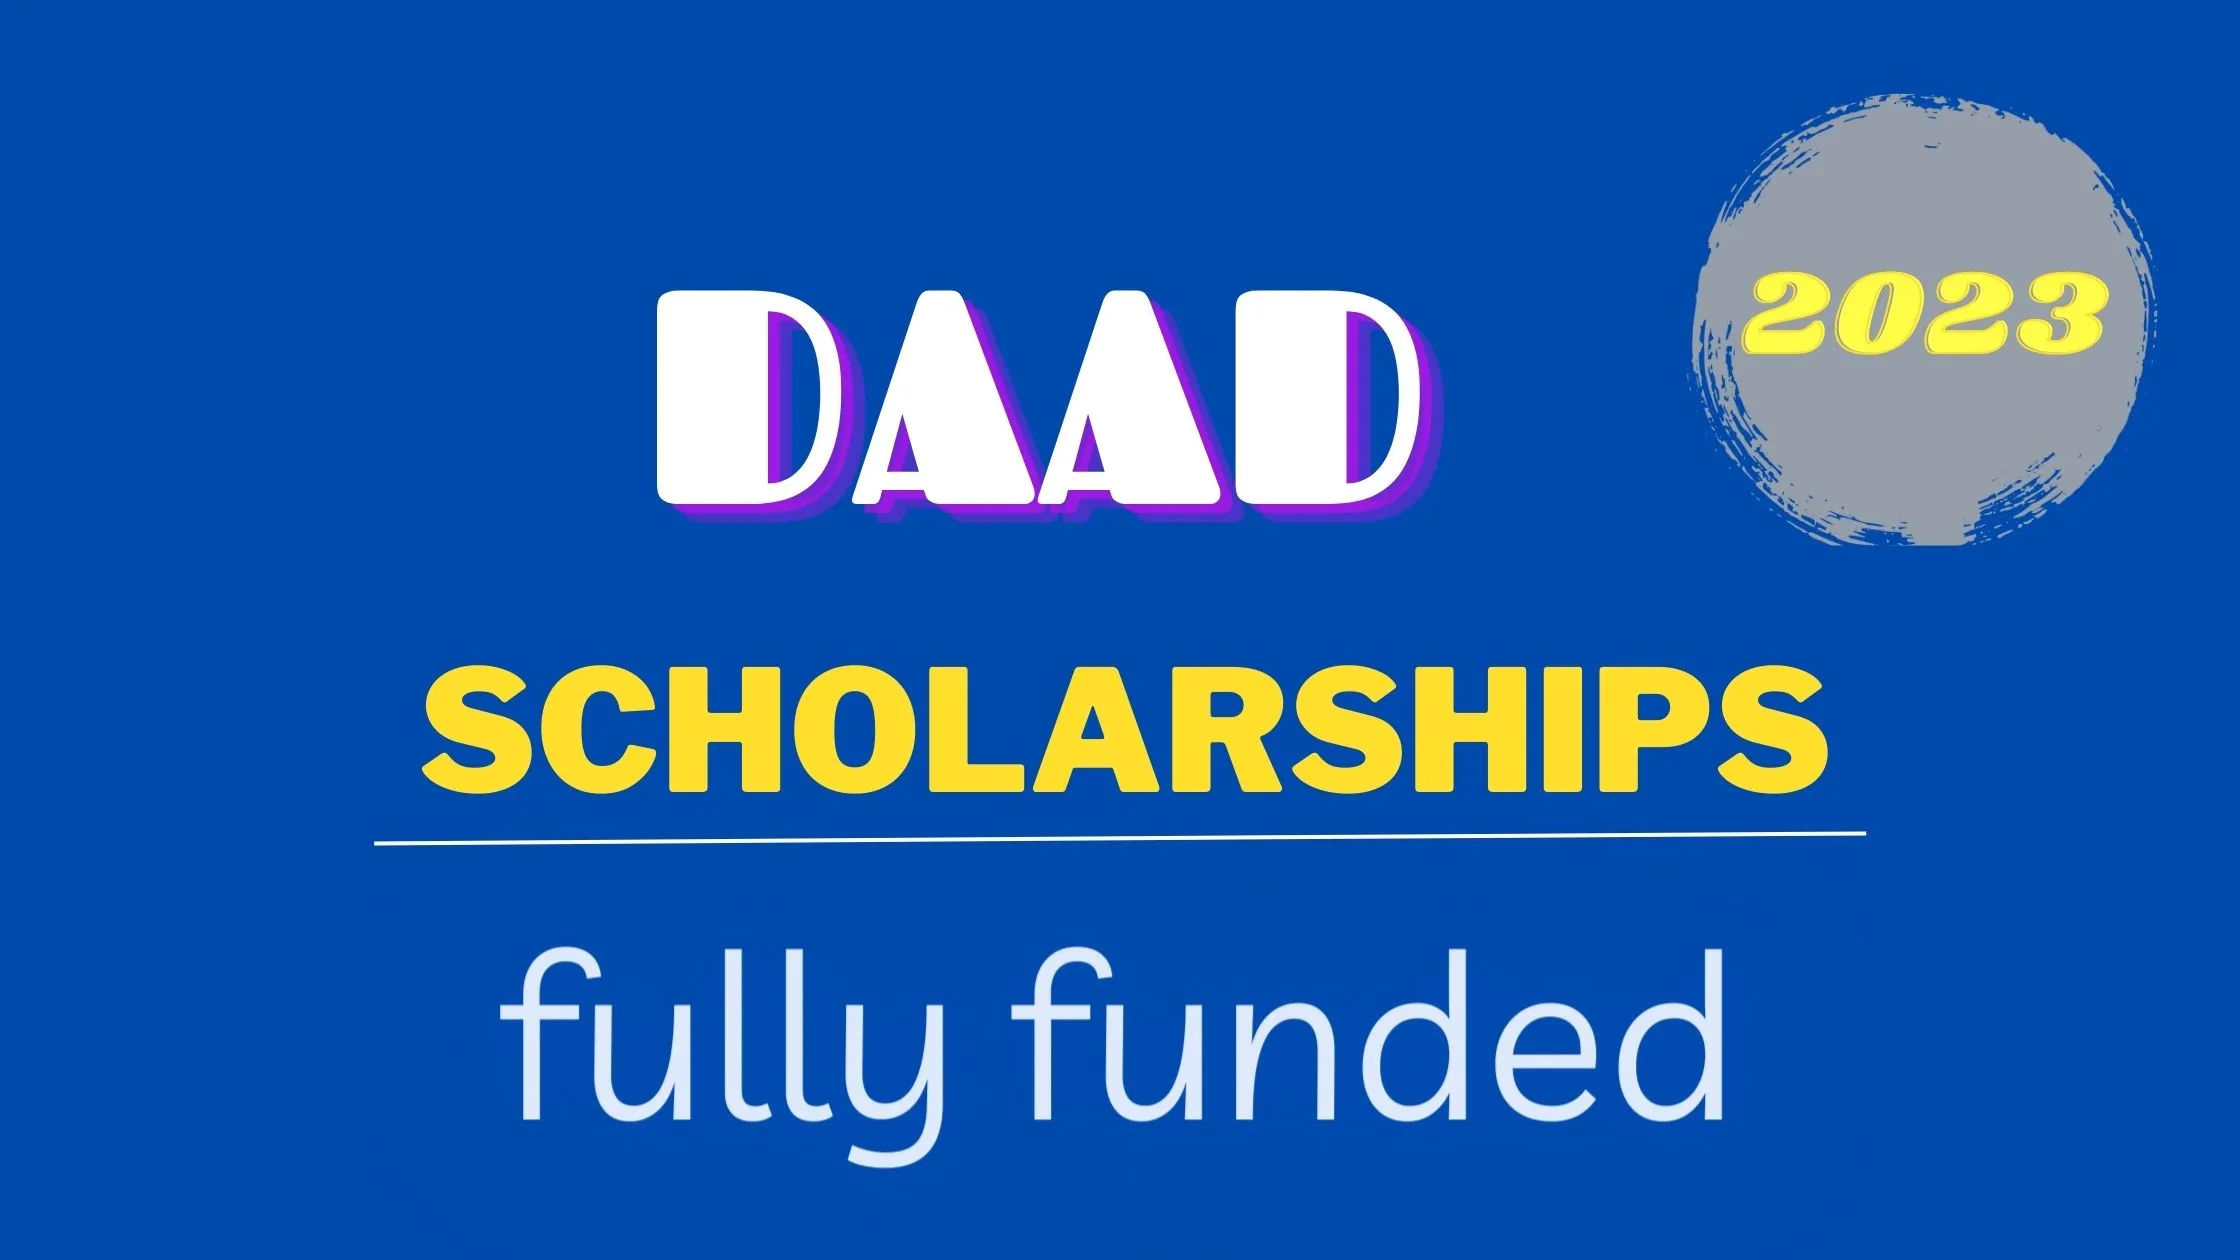 daad scholarship 2023